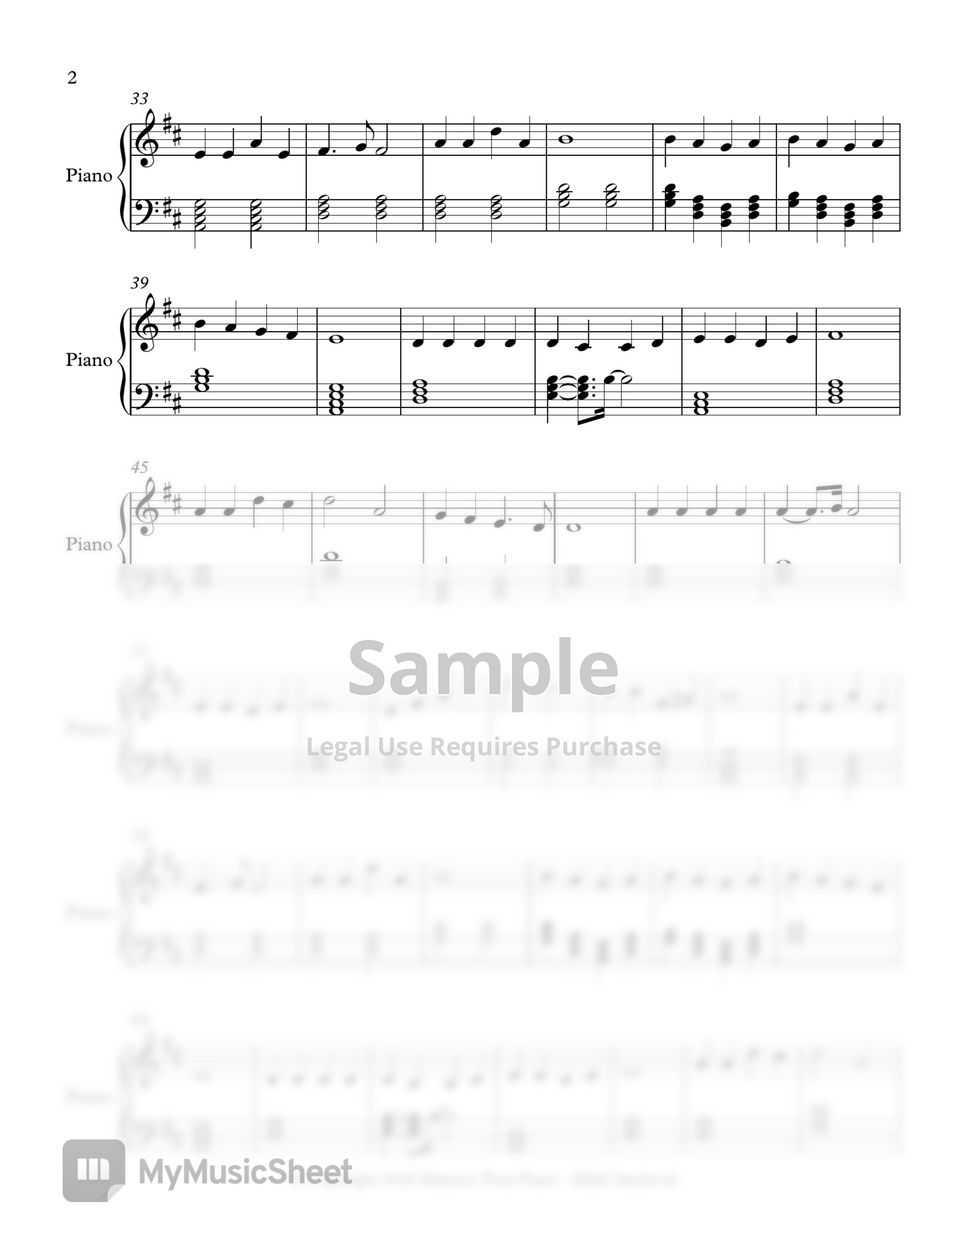 Himnario Adventista - ¡Firmes y adelante! - Fácil (Himno 516) Sheets by ...